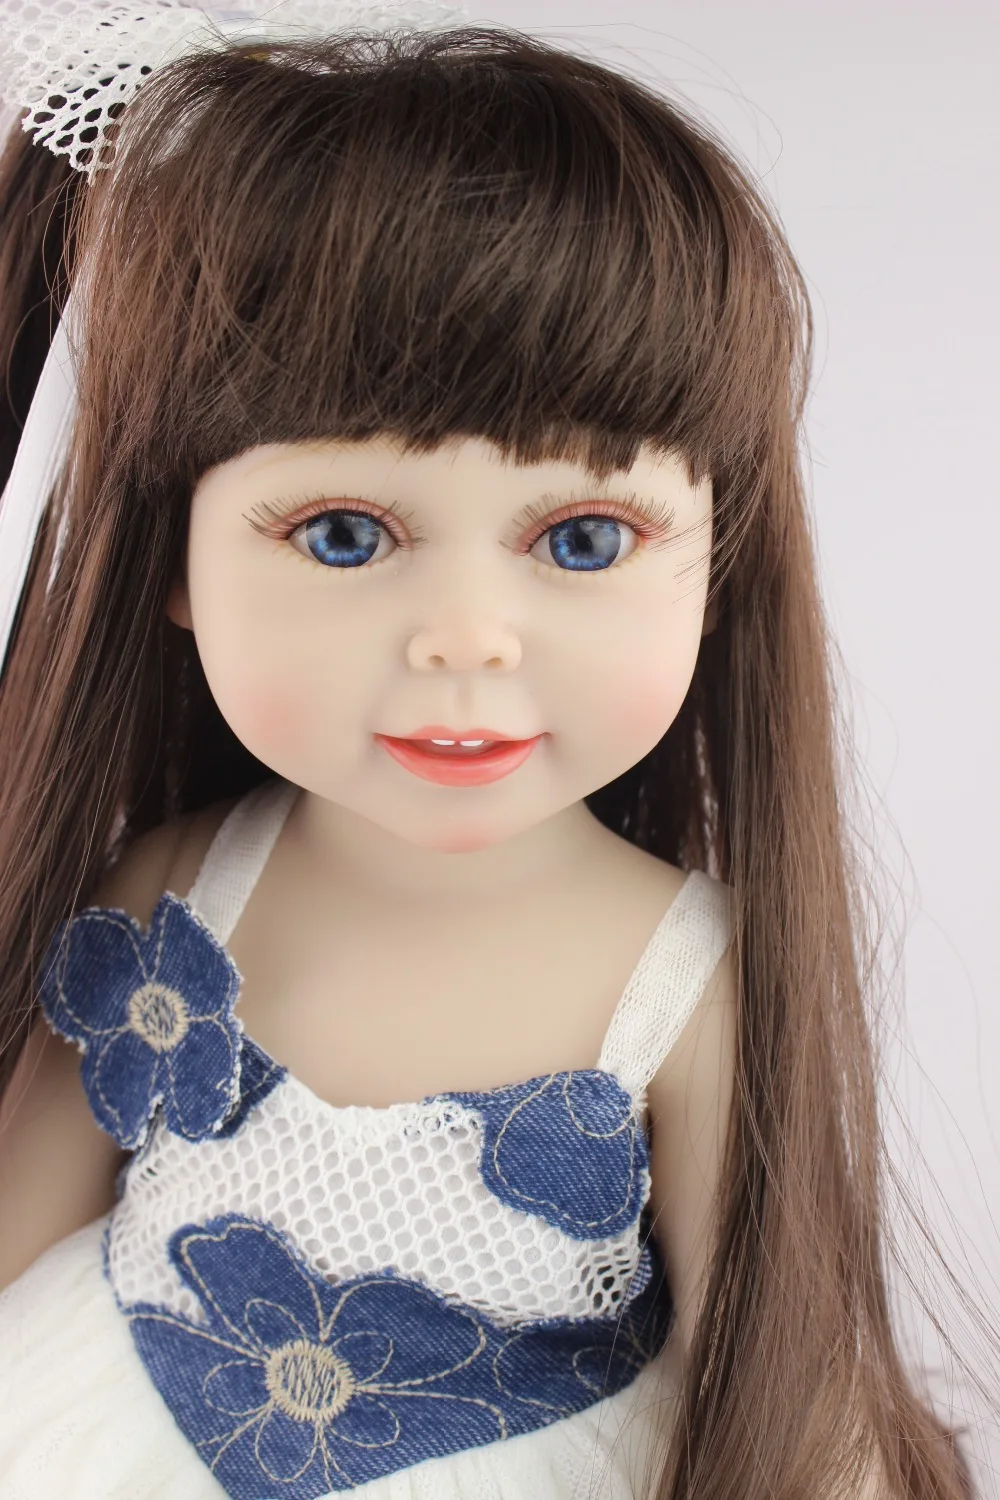 Npkколлекция Кукла реборн мягкий нежный прикосновение 18 дюймов Модная кукла подарок на день рождения игрушки для девочек детей